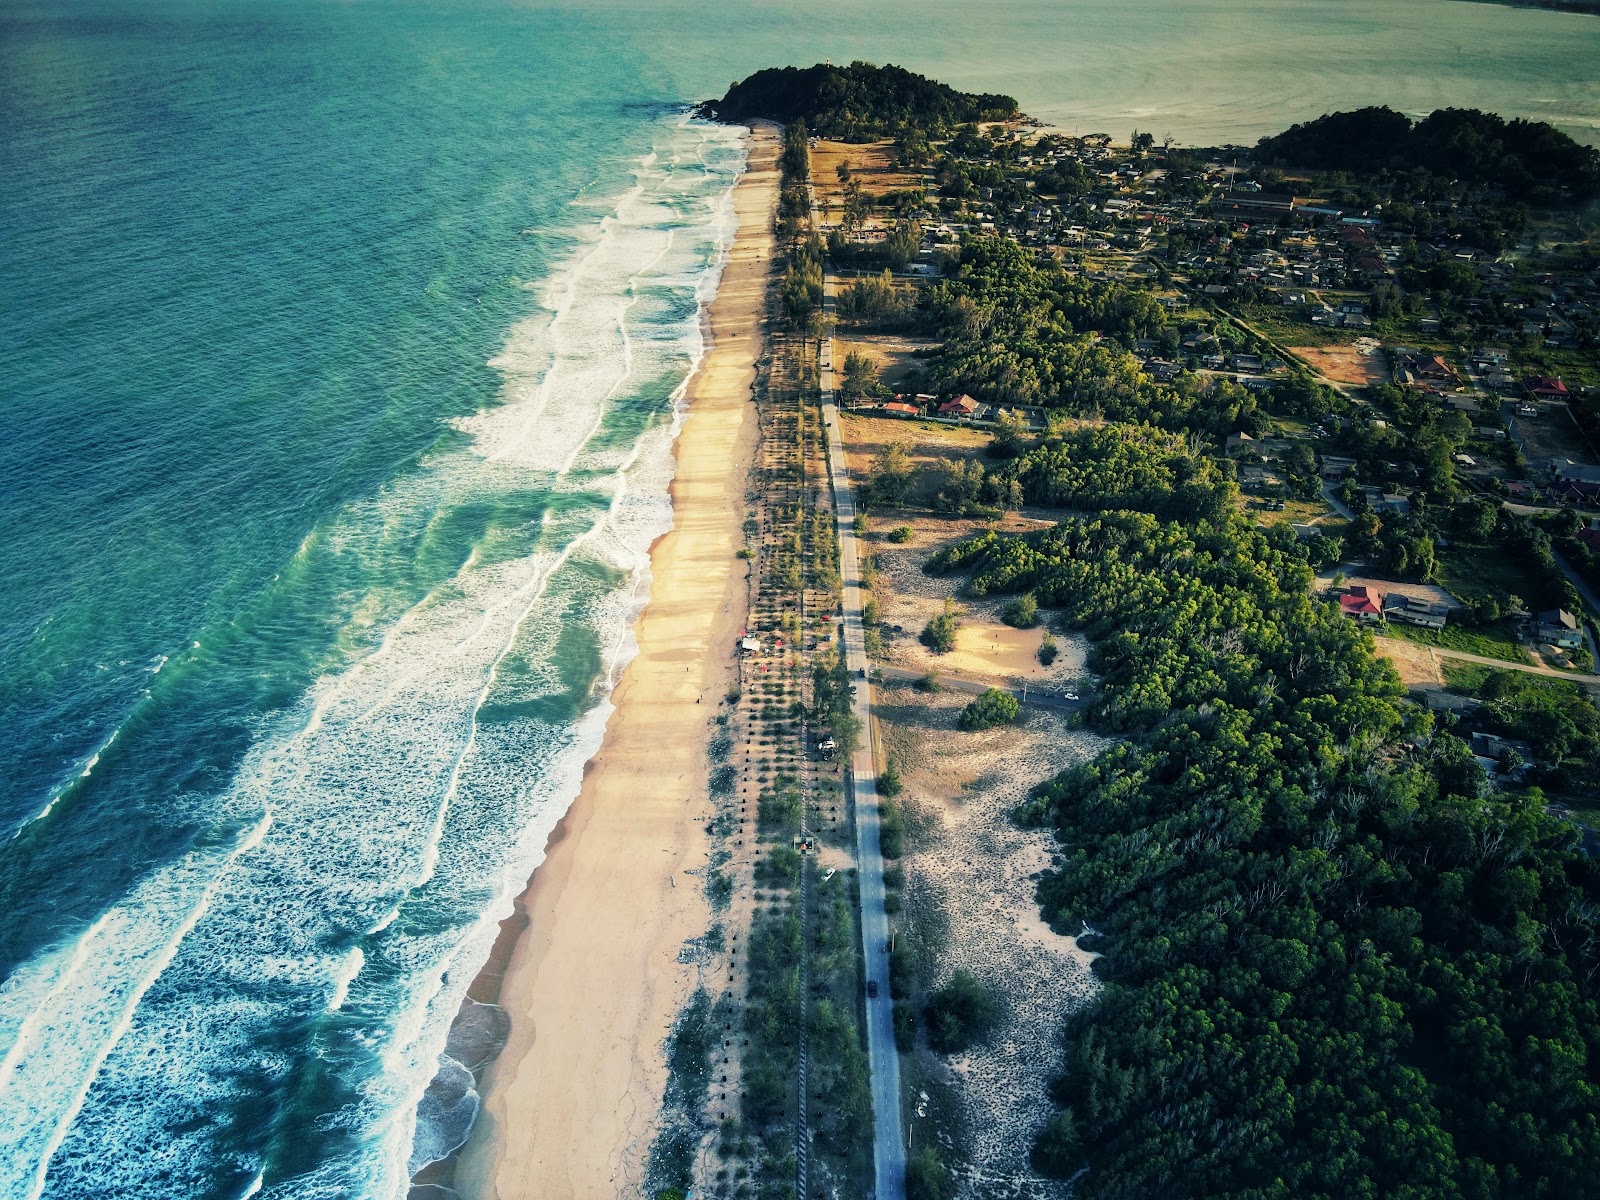 Zdjęcie Teluk Bidara Beach - popularne miejsce wśród znawców relaksu